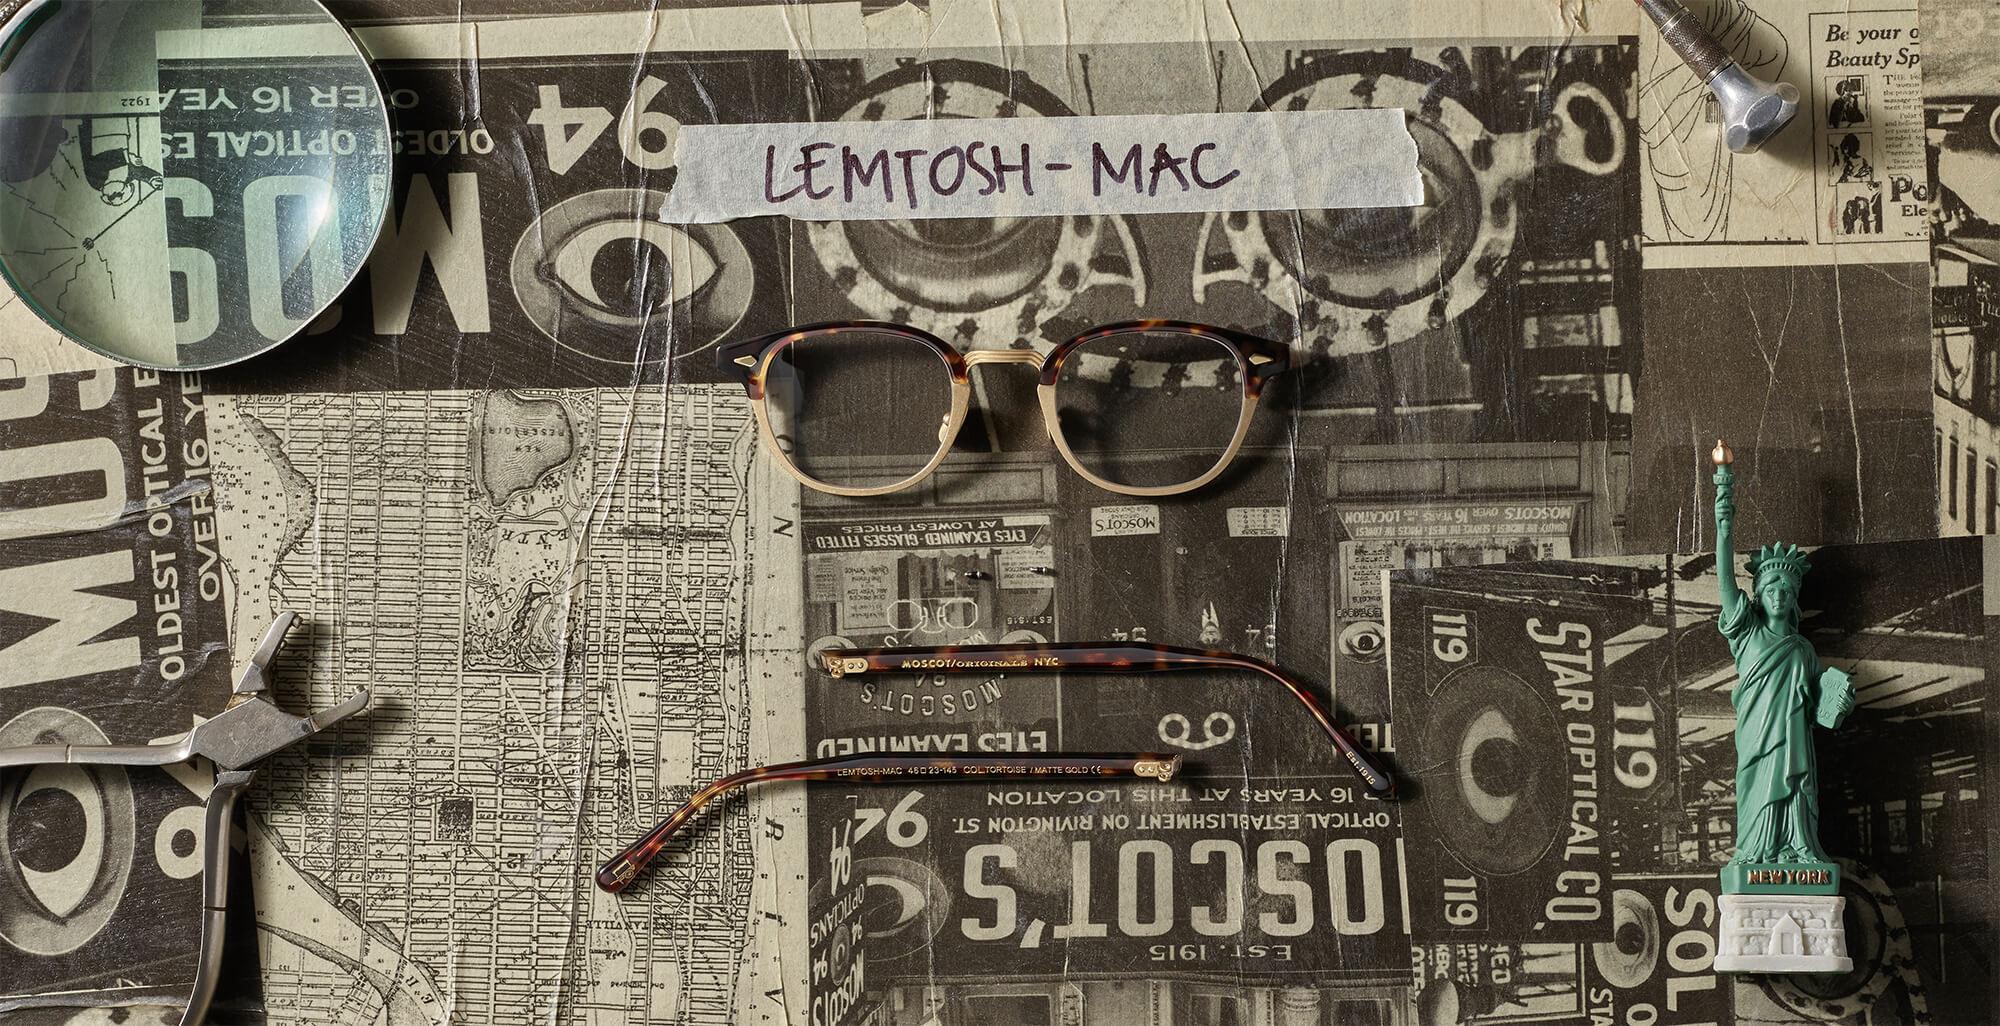 The LEMTOSH-MAC